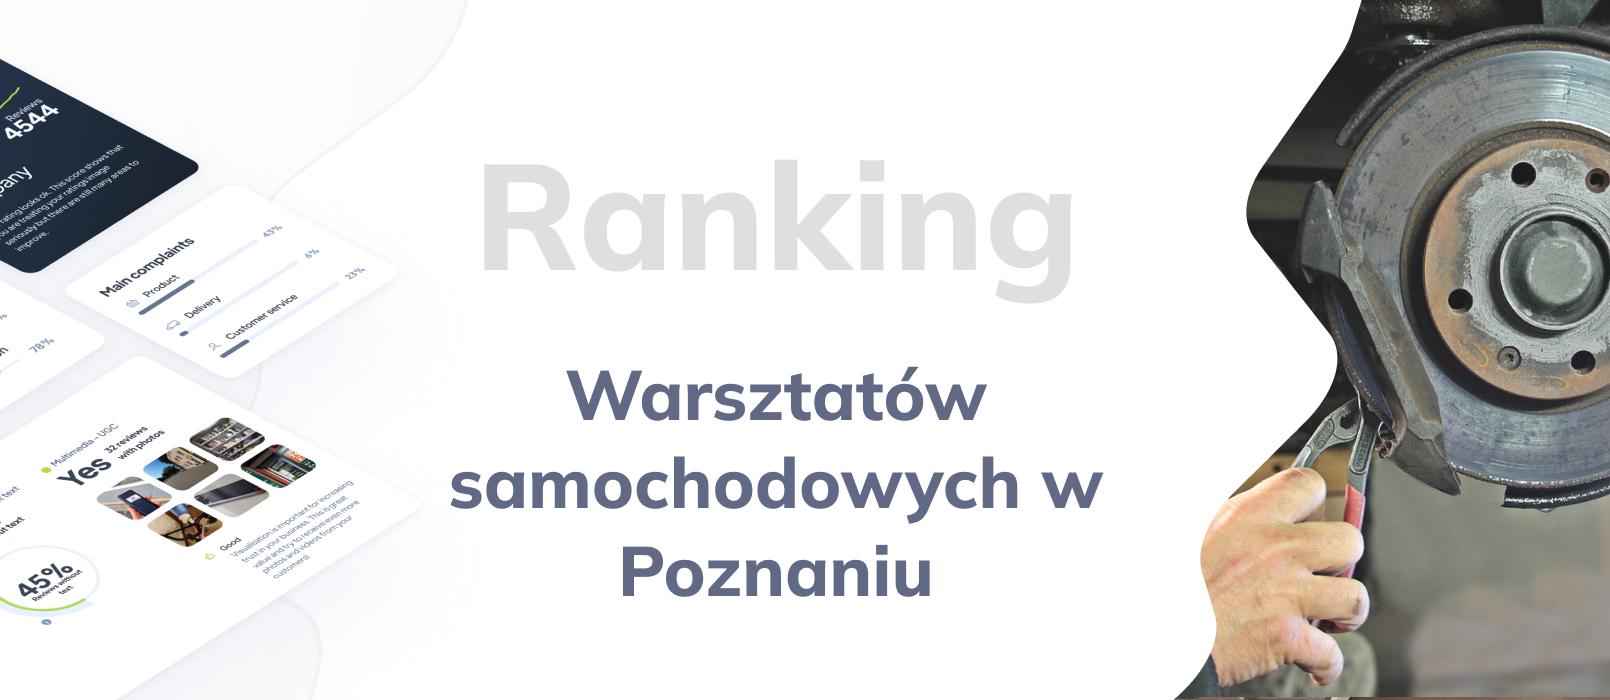 Warsztaty samochodowe w Poznaniu - ranking TOP 10